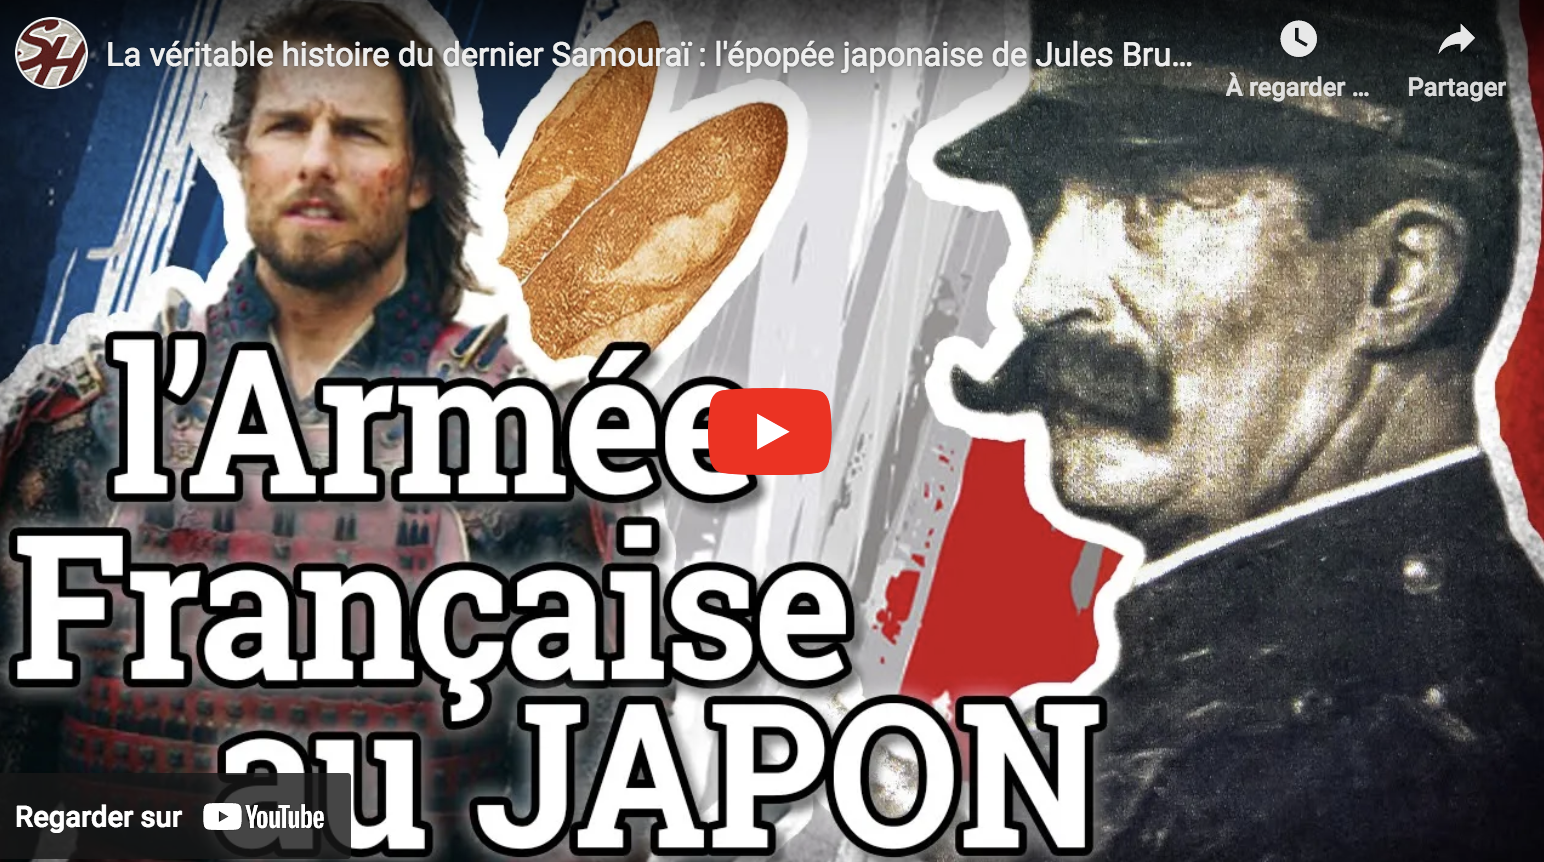 La véritable histoire du dernier Samouraï : l’épopée japonaise du soldat français Jules Brunet (VIDÉO)